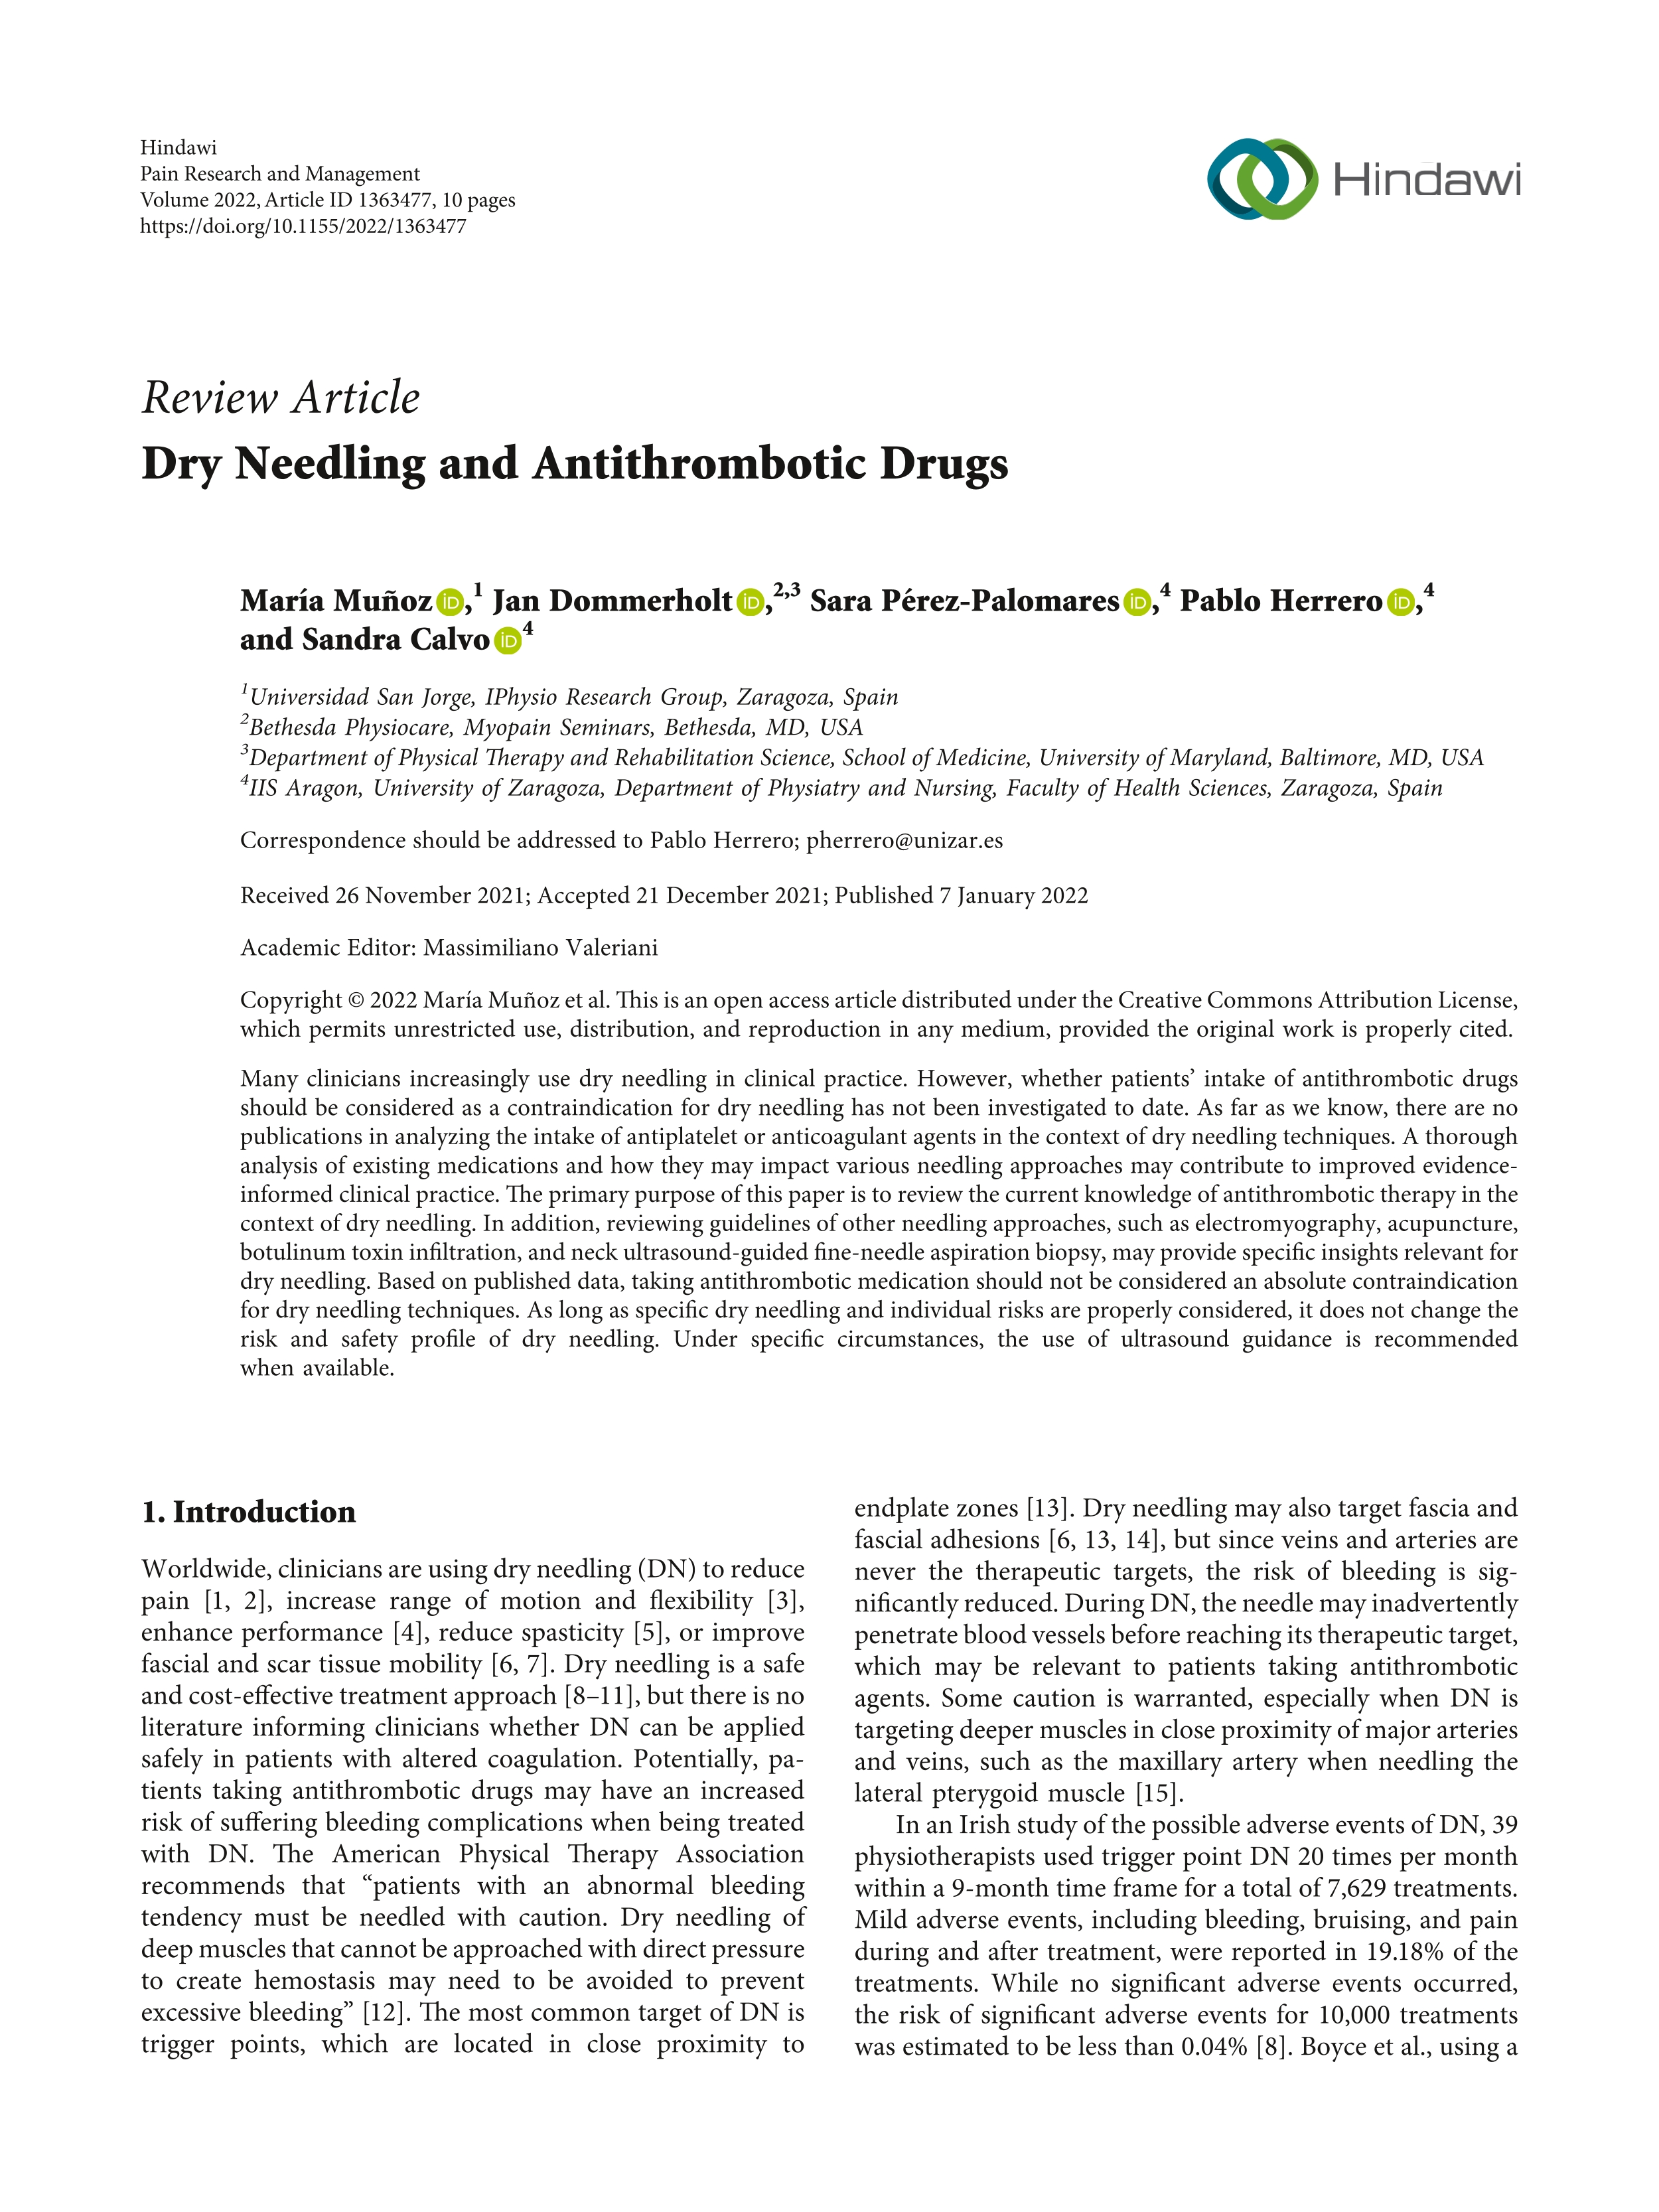 Dry Needling and Antithrombotic Drugs